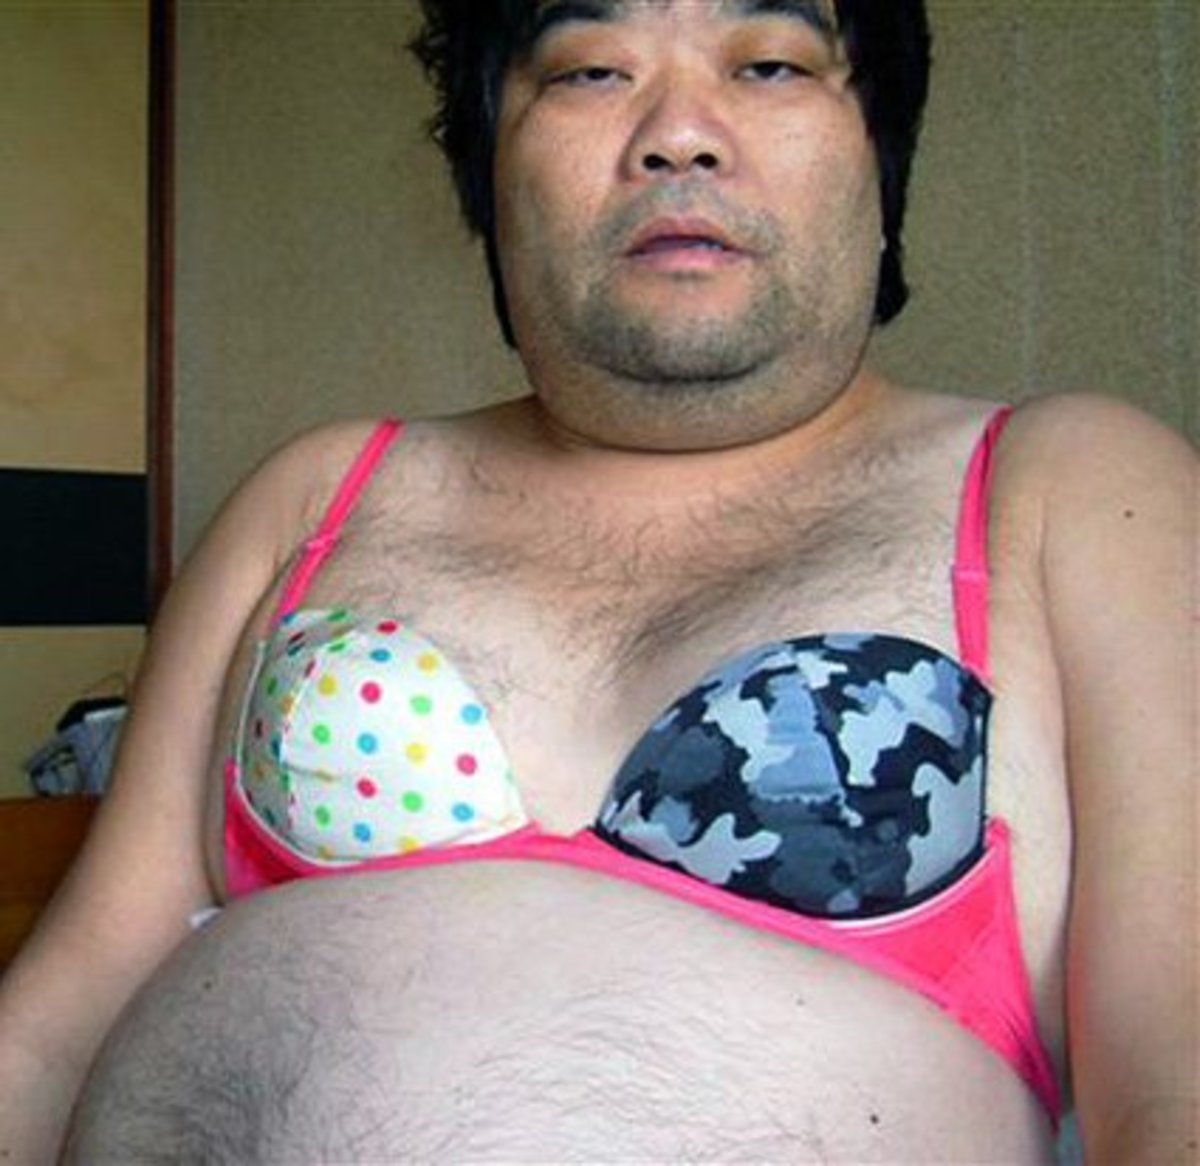 Красивые толстые китаянки на эротических снимках. Фото с голыми толстыми китаянками